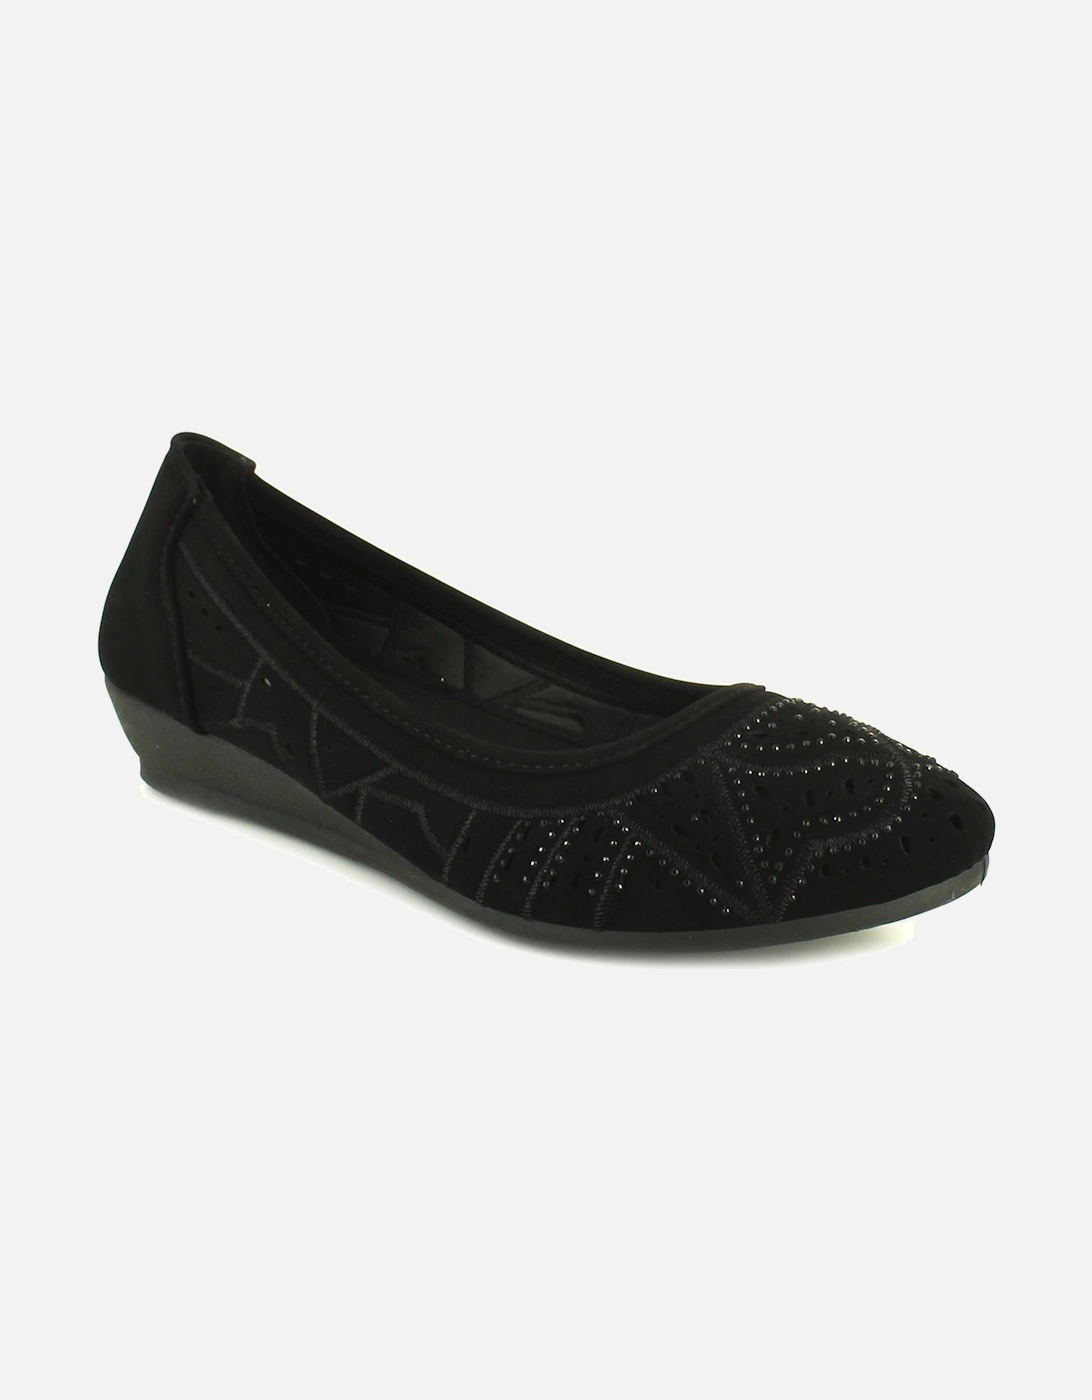 Womens Shoes Wedges Tasha Slip On black UK Size, 6 of 5